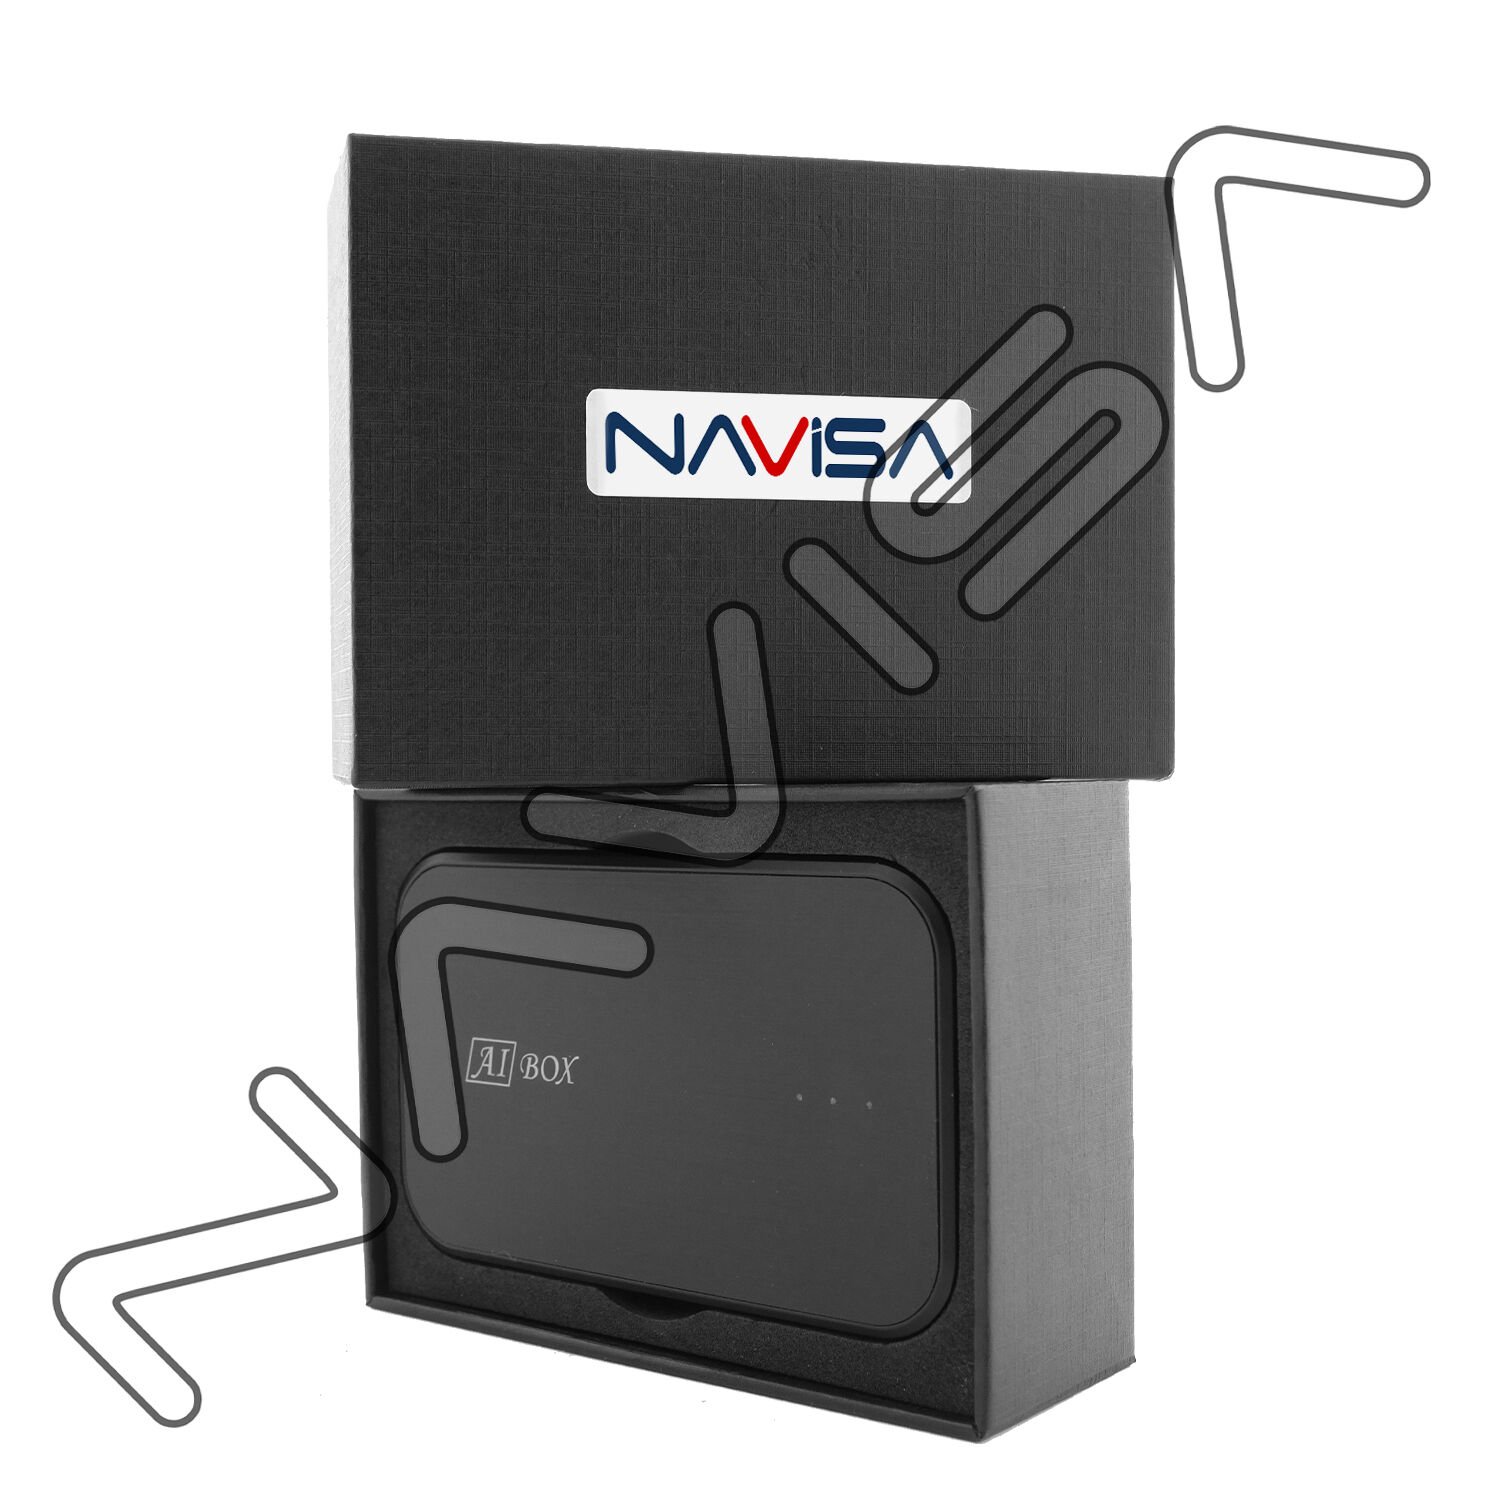 NAVISA 2 GB Ram 32 GB Hafızalı Carplay Uyumlu Android Multimedya Smartbox